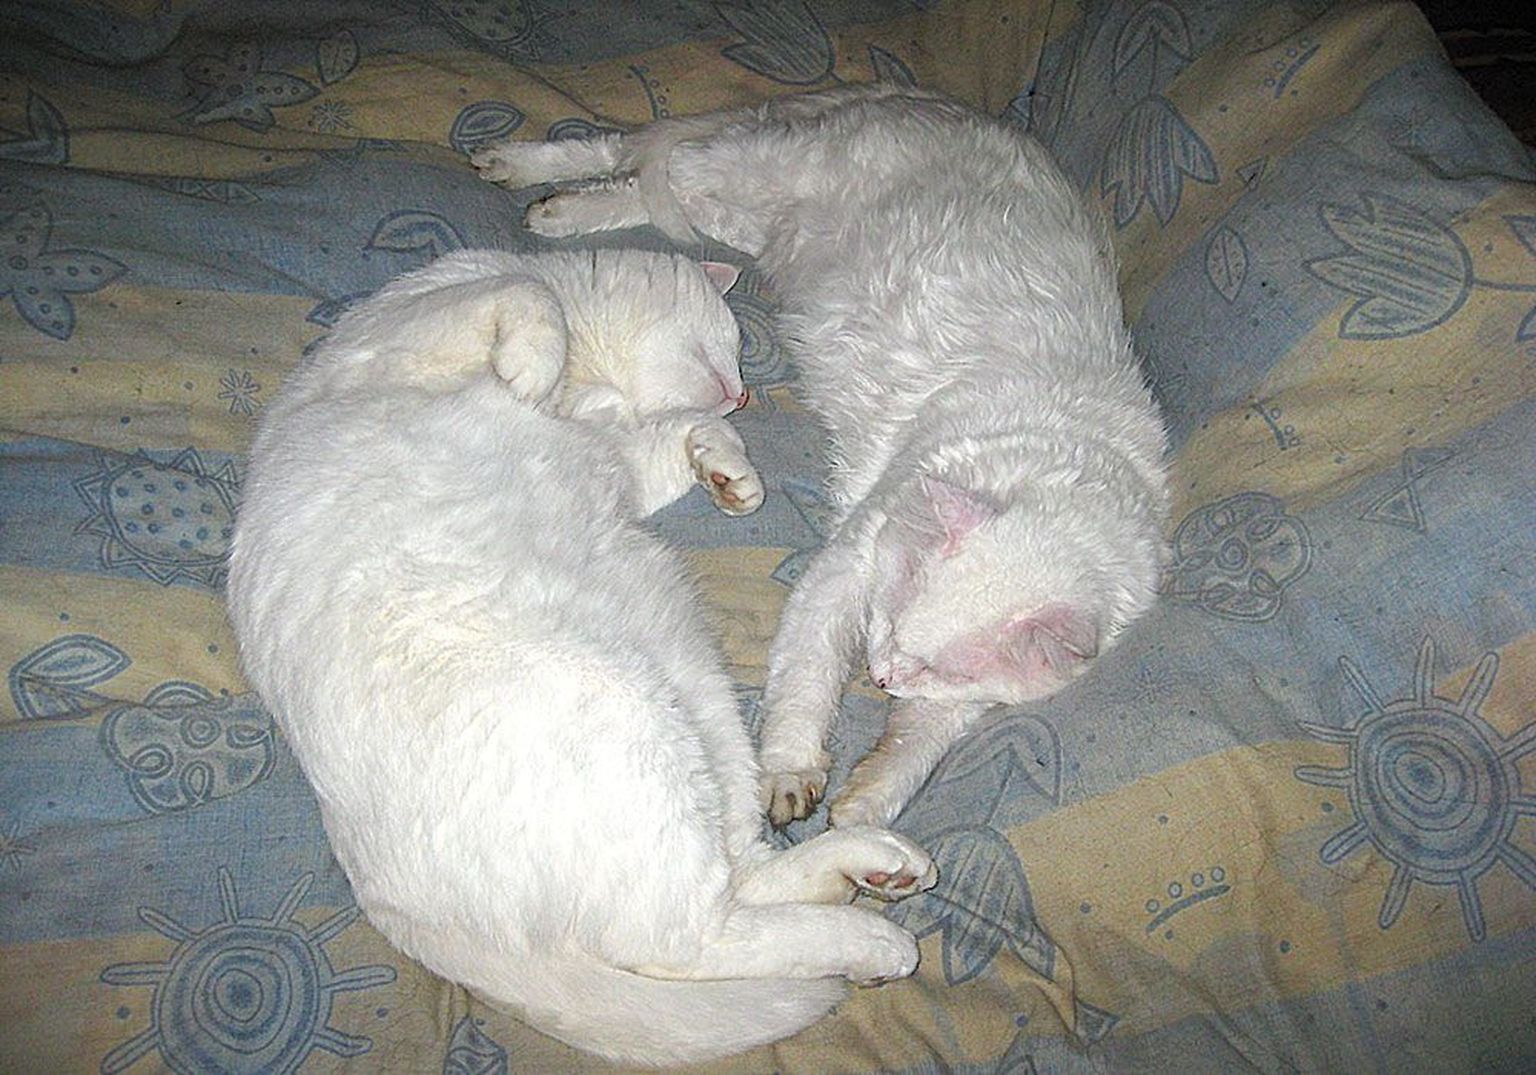 Волли (справа) прожил с вирусом иммунодефицита пять лет. На фото он вместе со своим лучшим другом Киту.